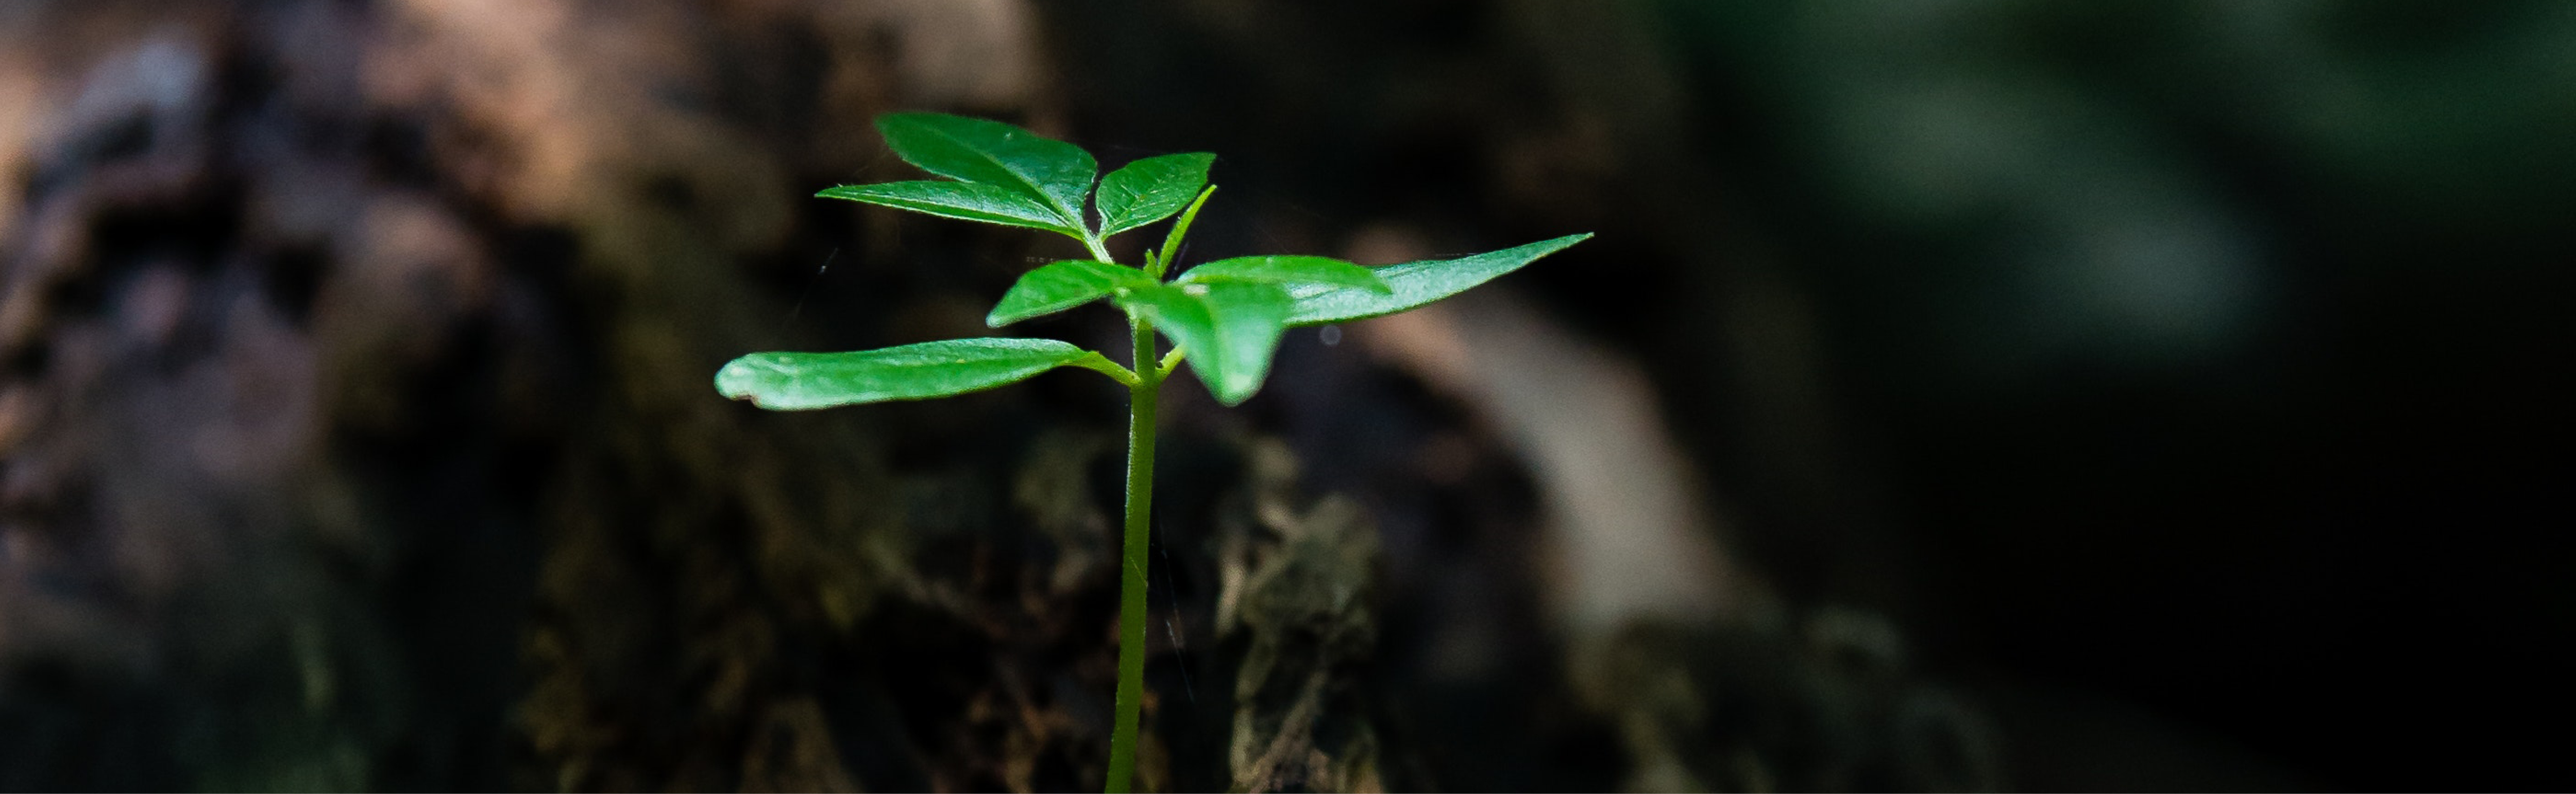 Kleine junge Pflanze wächst aus der Erde